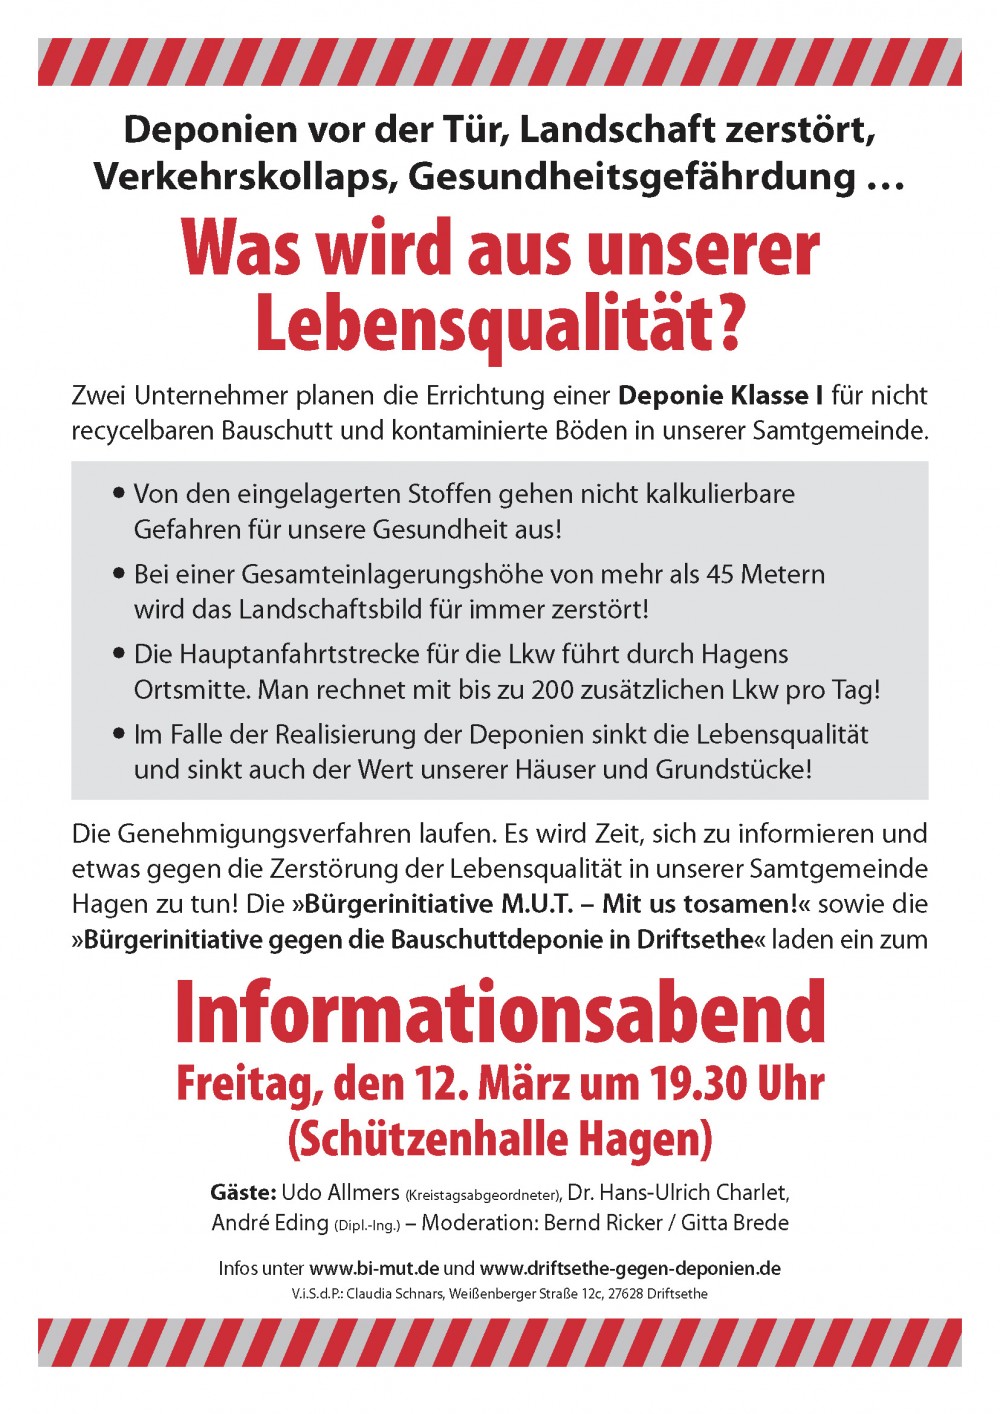 Einladung zum Informationsabend in Hagen